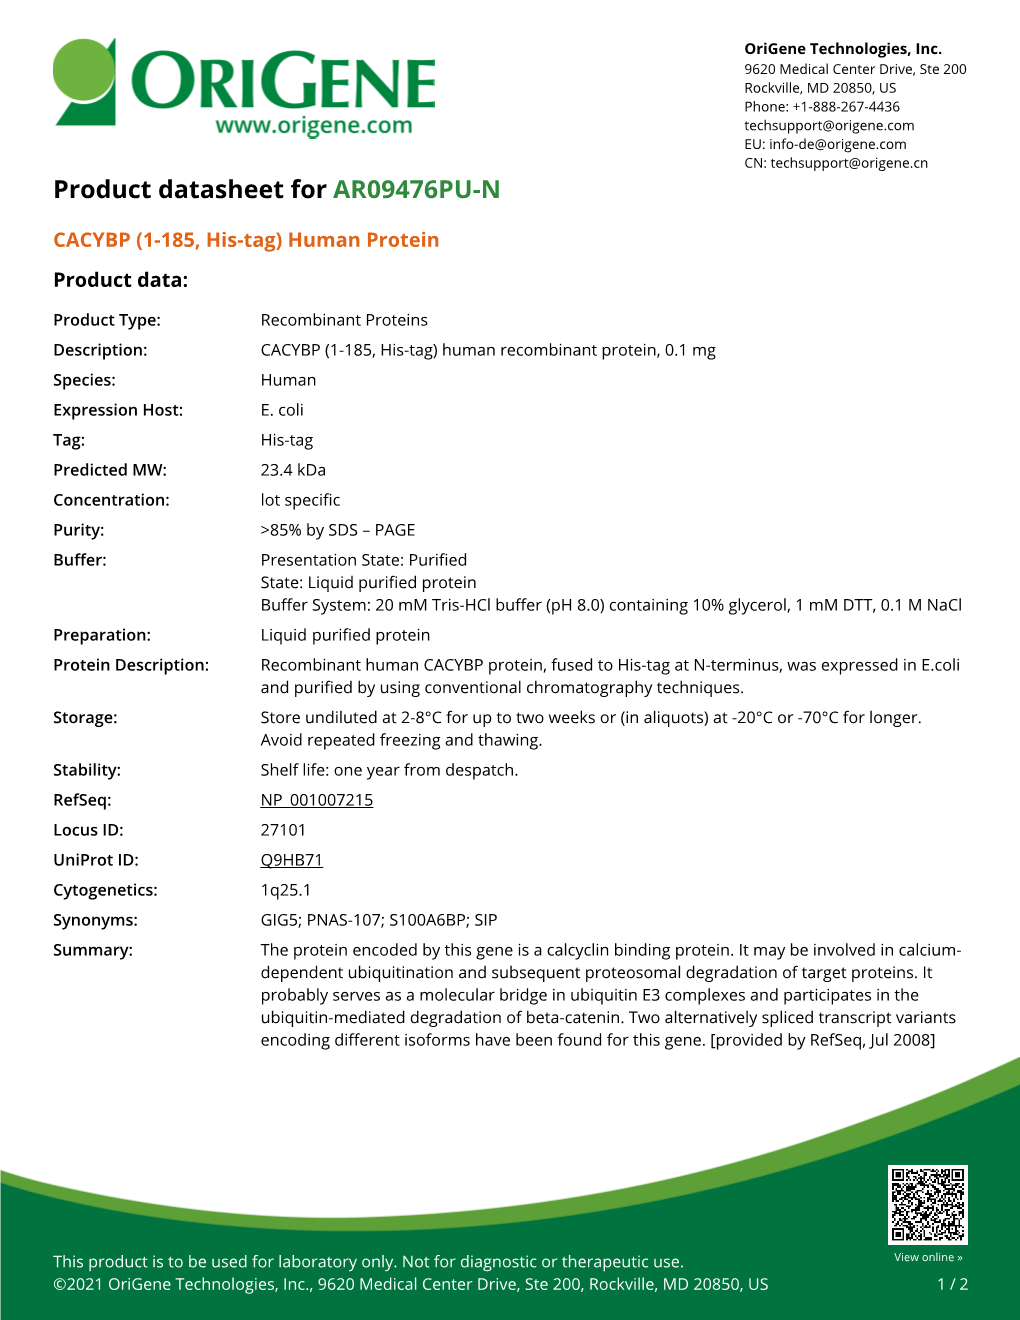 CACYBP (1-185, His-Tag) Human Protein – AR09476PU-N | Origene